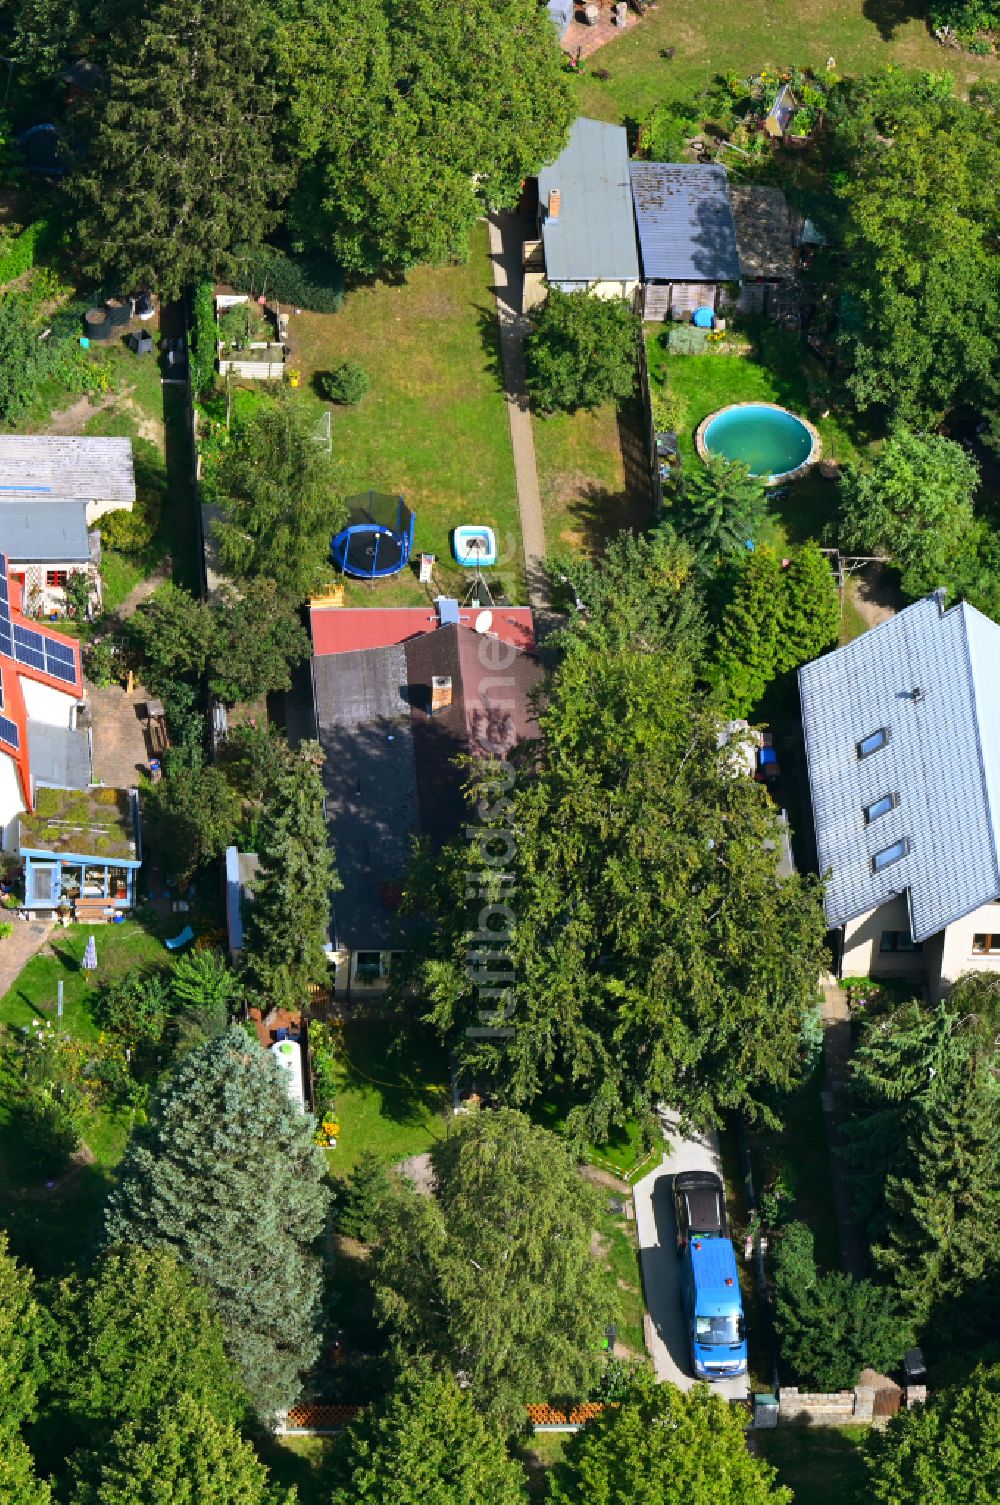 Luftbild Berlin - Einfamilienhäuser mit Gärten Bergedorfer Straße an der in Berlin, Deutschland